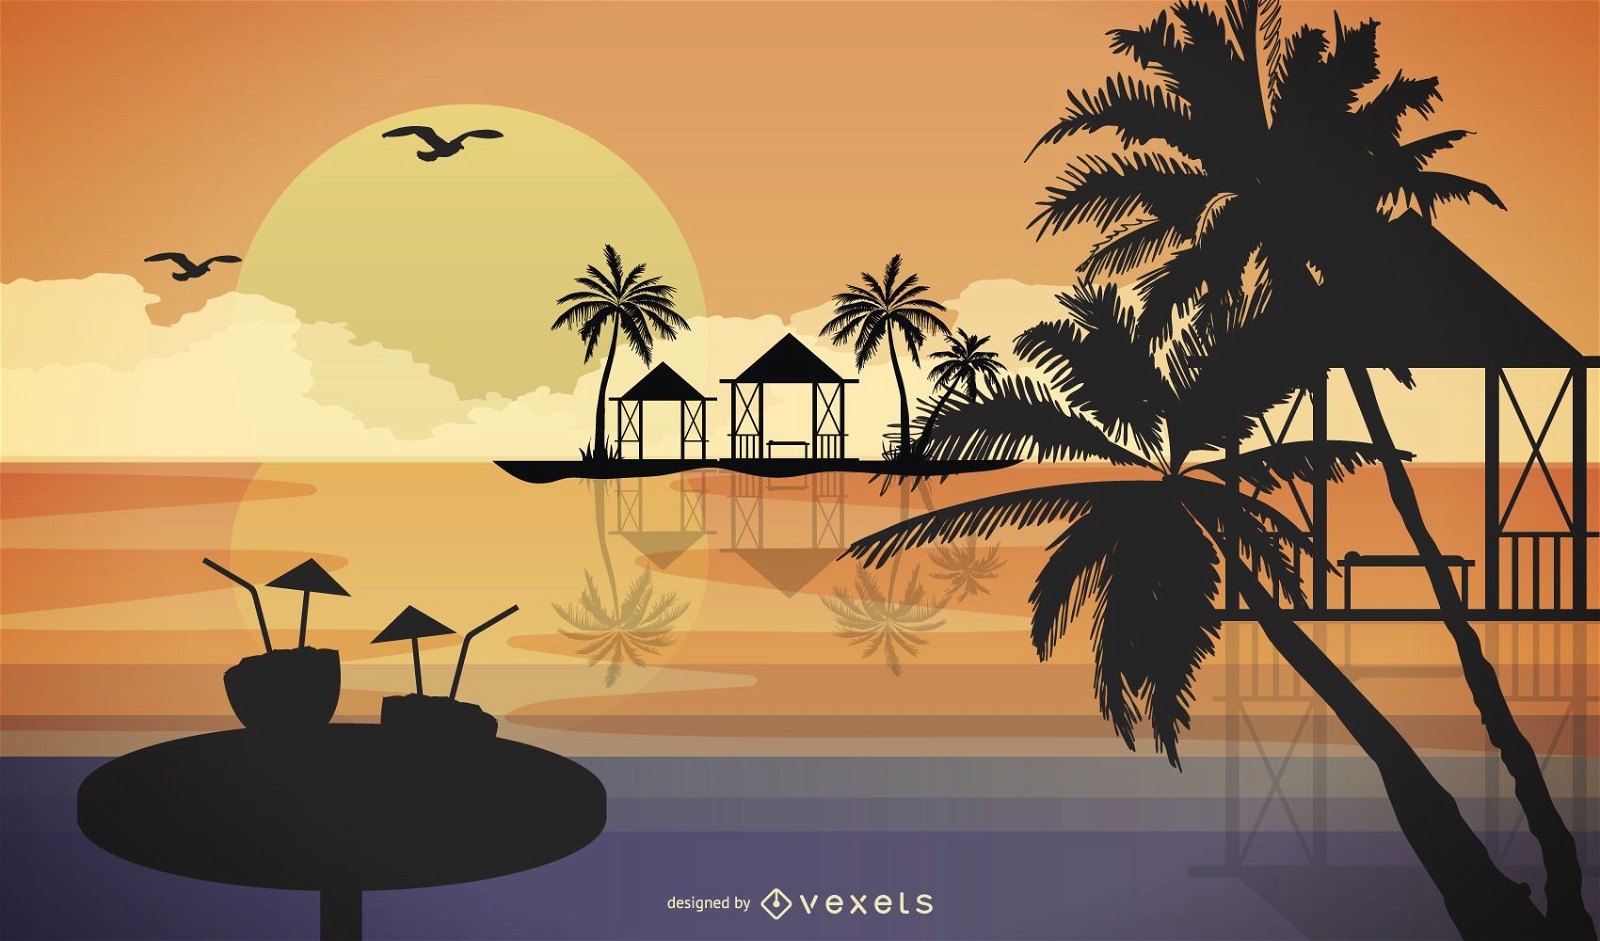 Descarga Vector De Dibujos Animados De Resort De Vacaciones De Verano